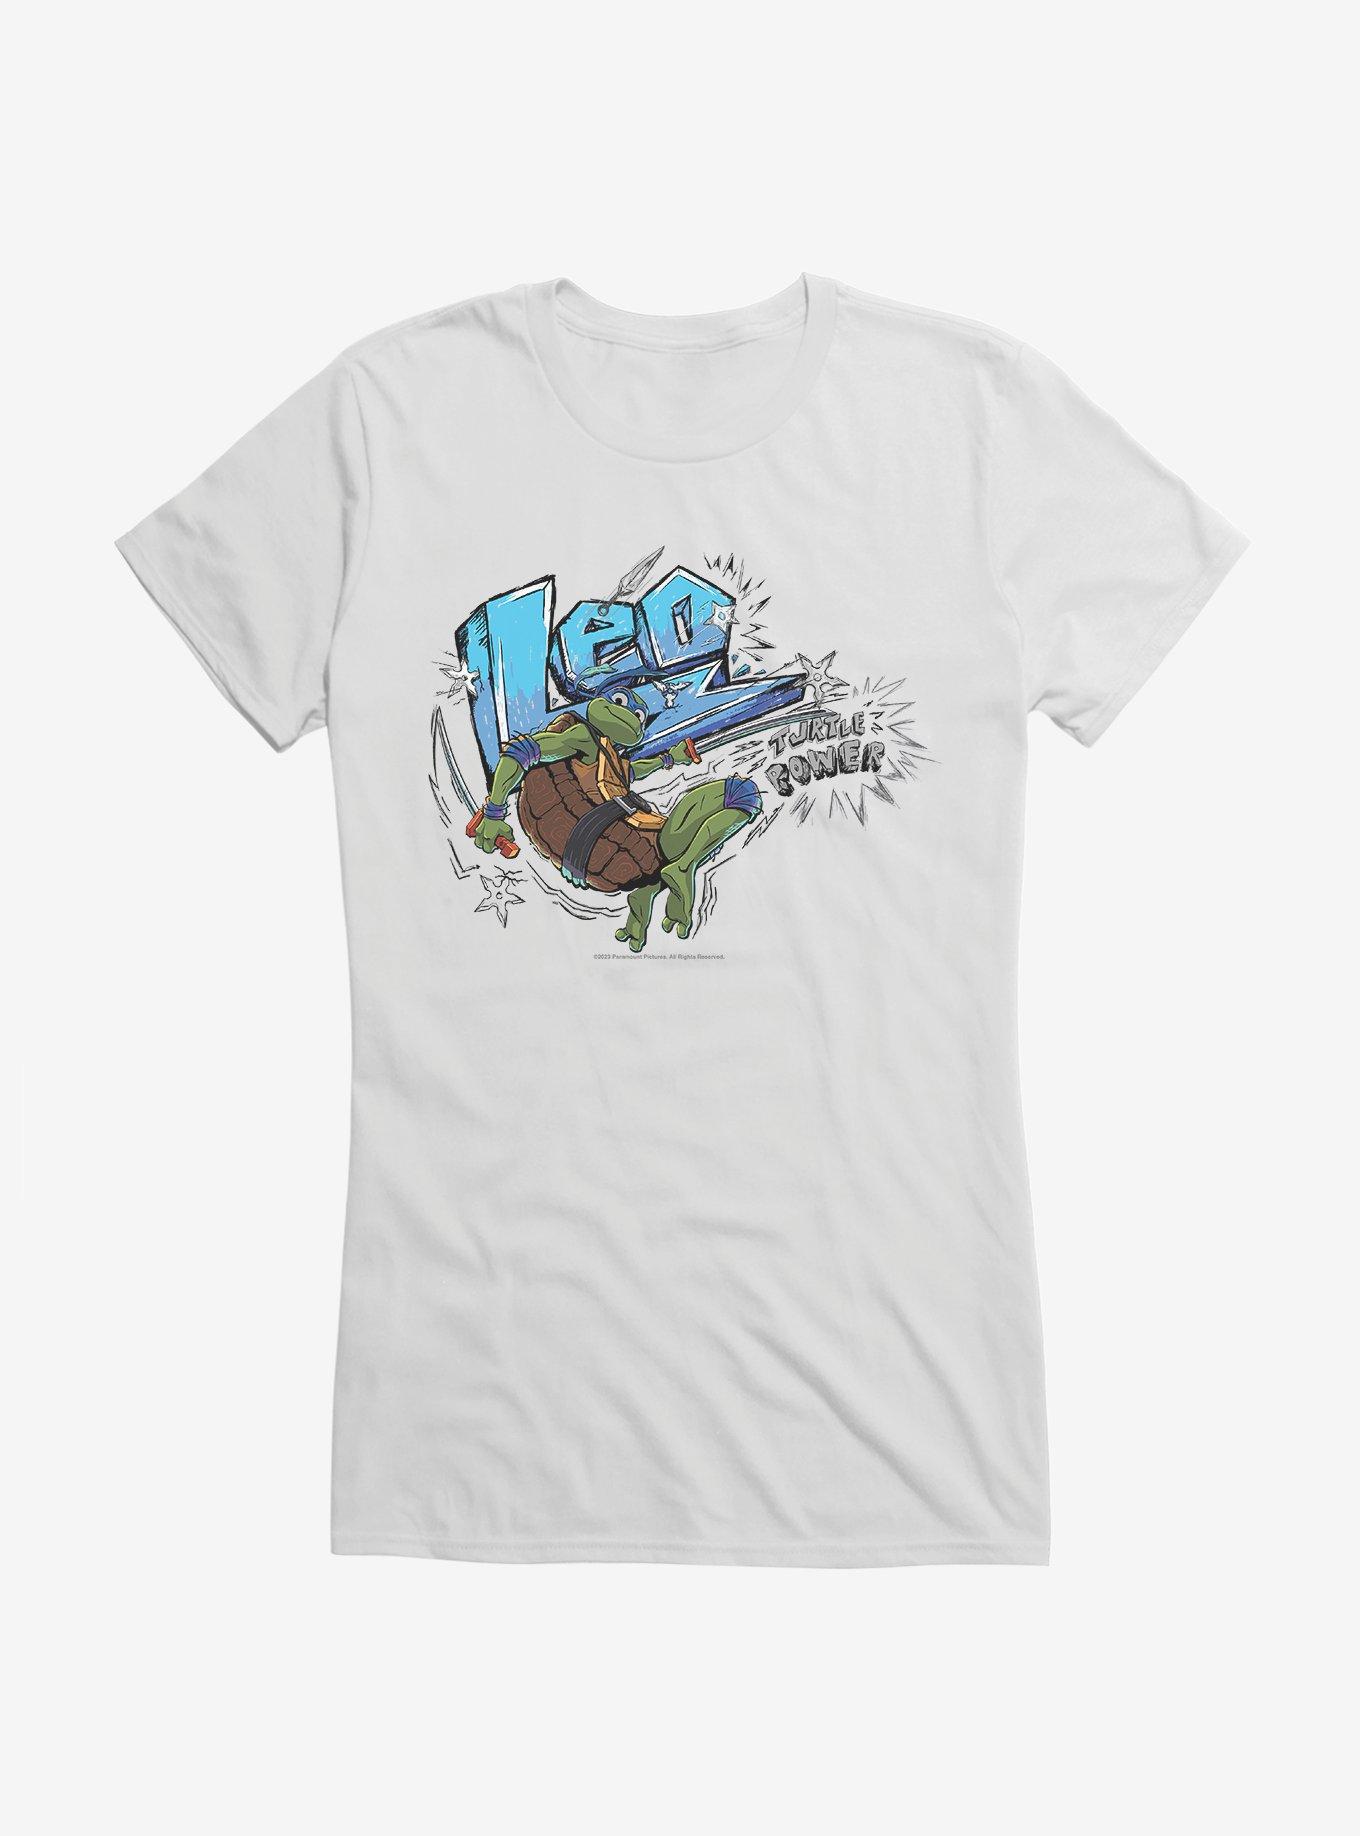 Funko Pop! Tees Teenage Mutant Ninja Turtles - Turtle Power Short Sleeve Unisex T-Shirt (L)